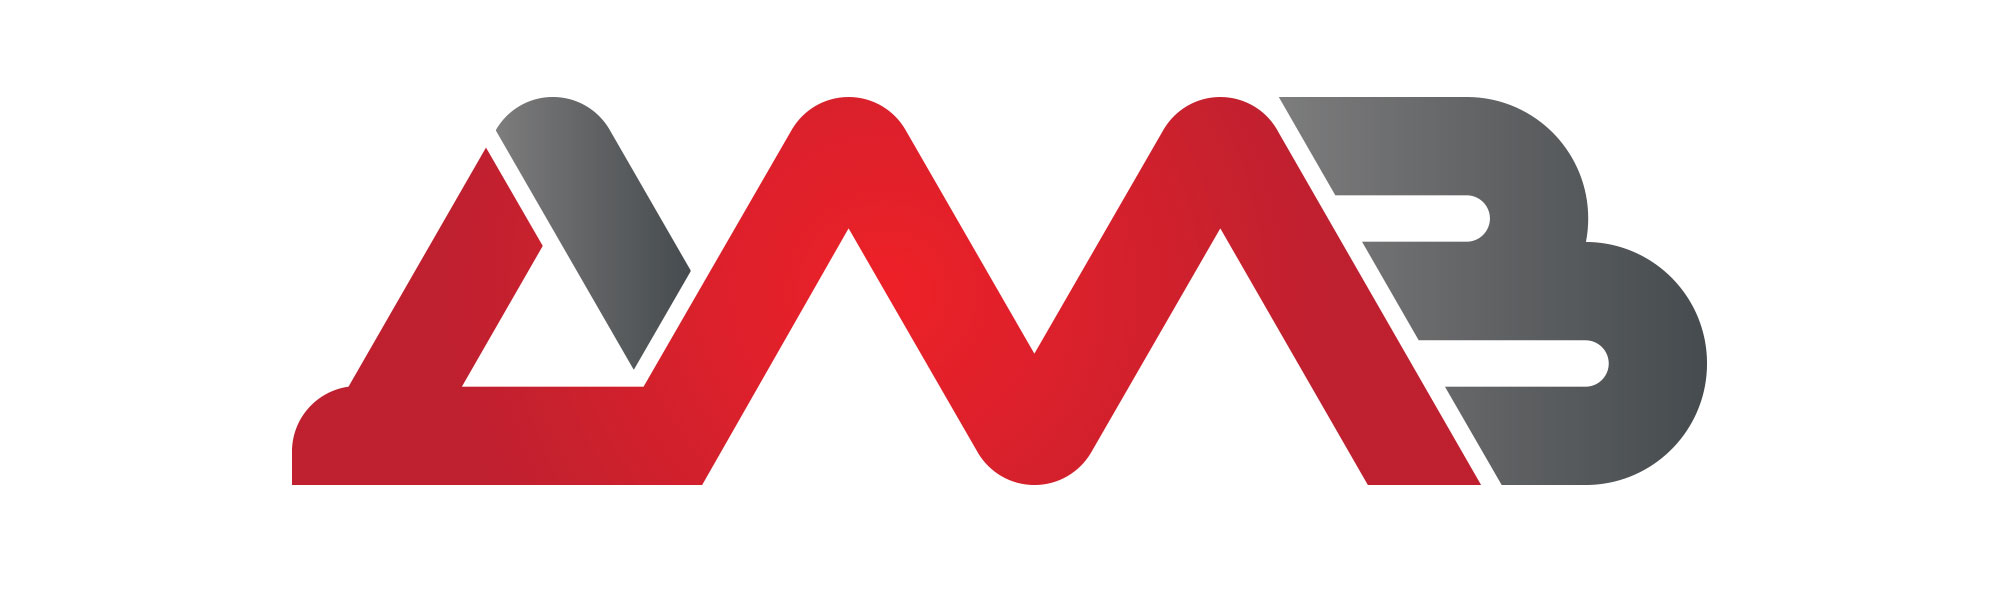 dmv logo redesign